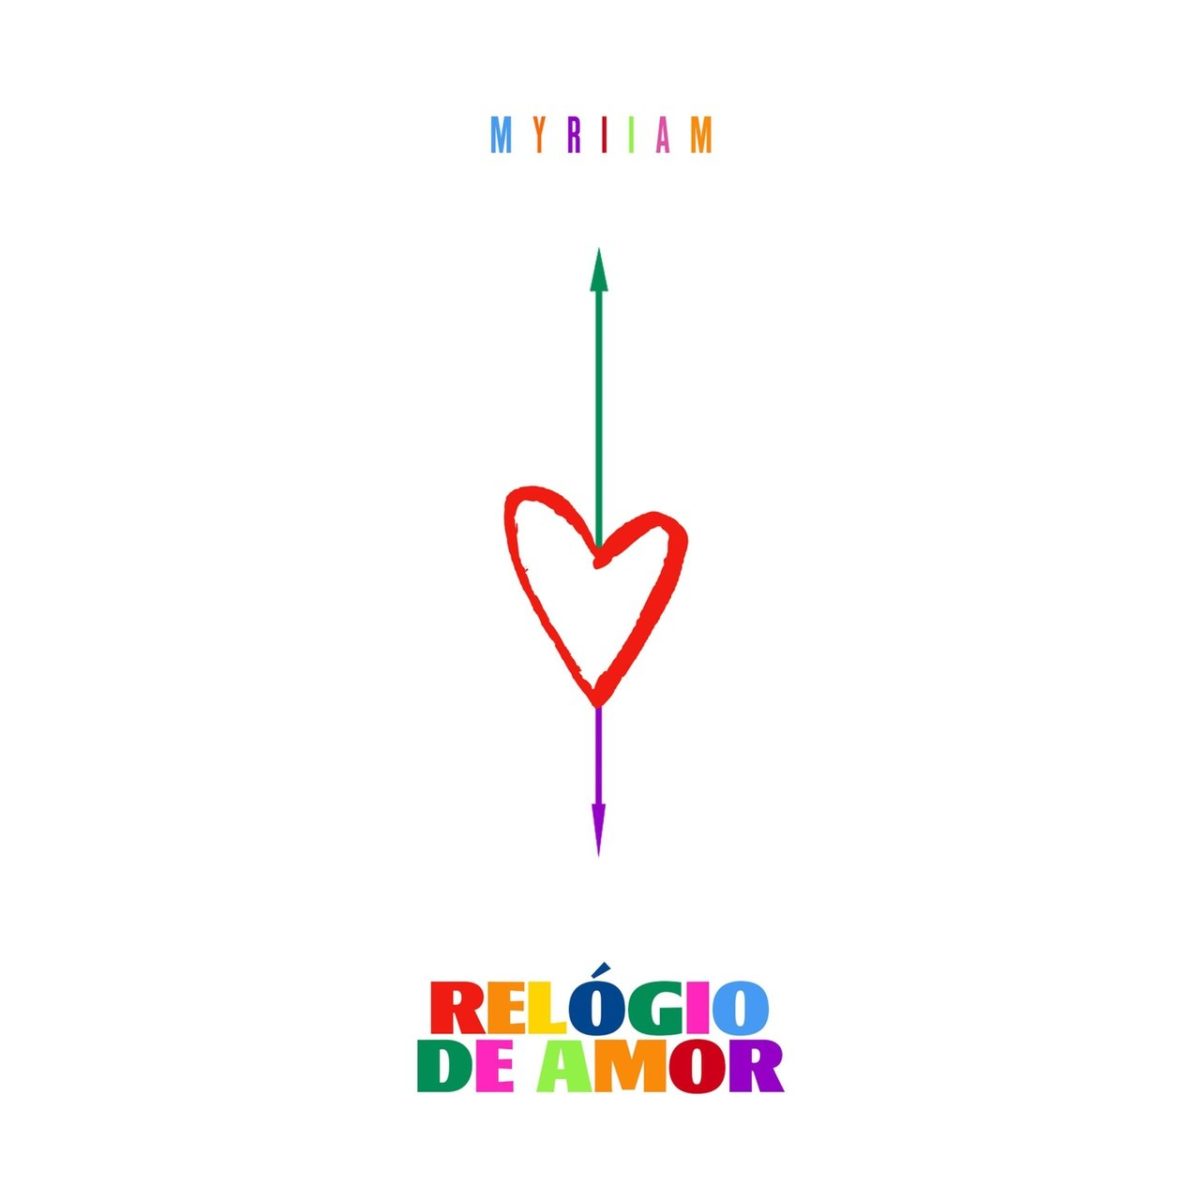 Myriiam - Relógio De Amor (Cover)